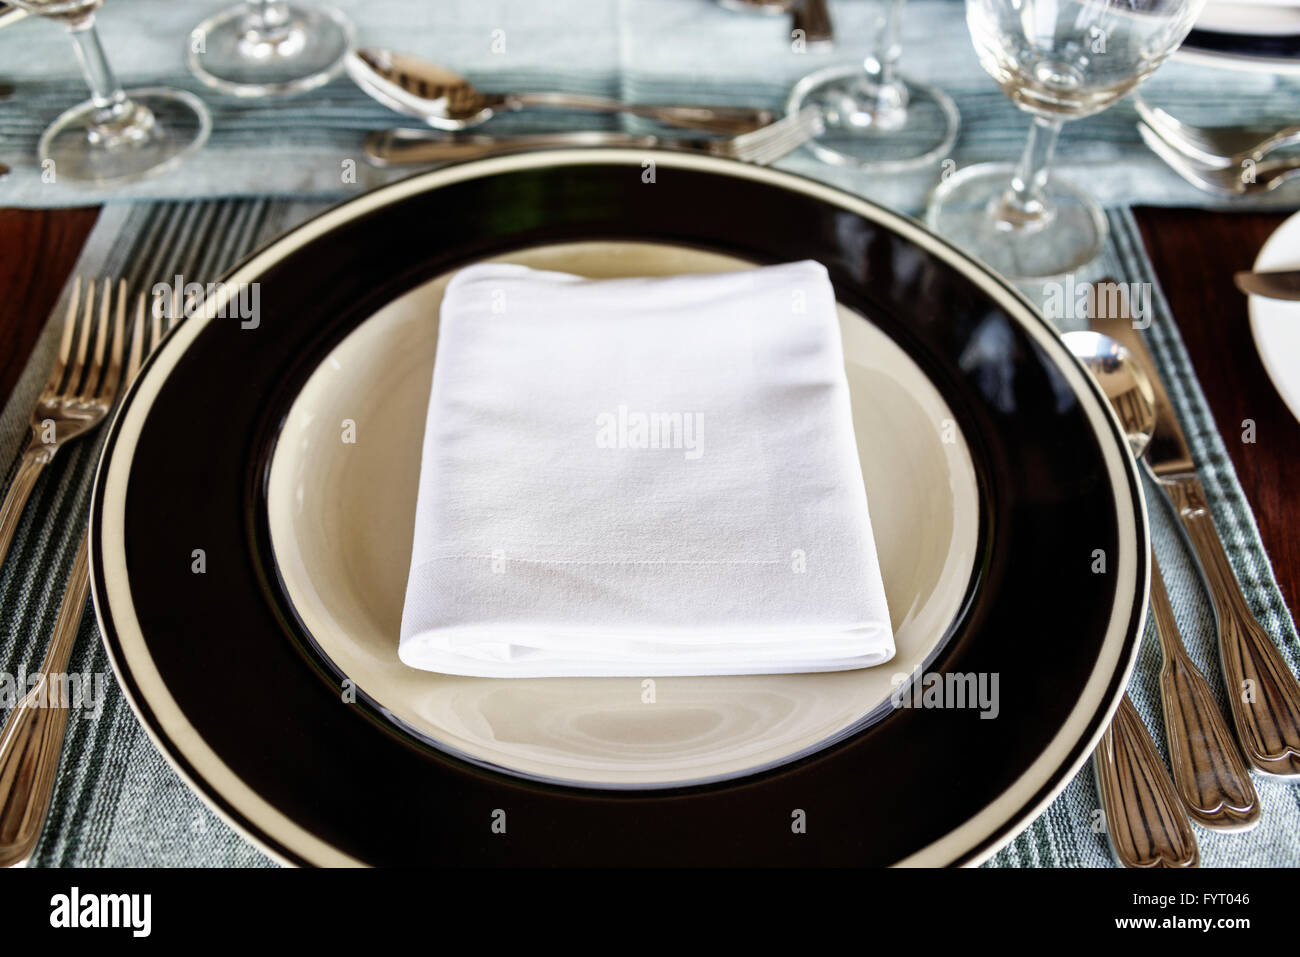 Vue perspective de la première personne sont soigneusement disposées sur une table à manger avec une serviette pliée au milieu de la plaque avec des ustensiles Banque D'Images